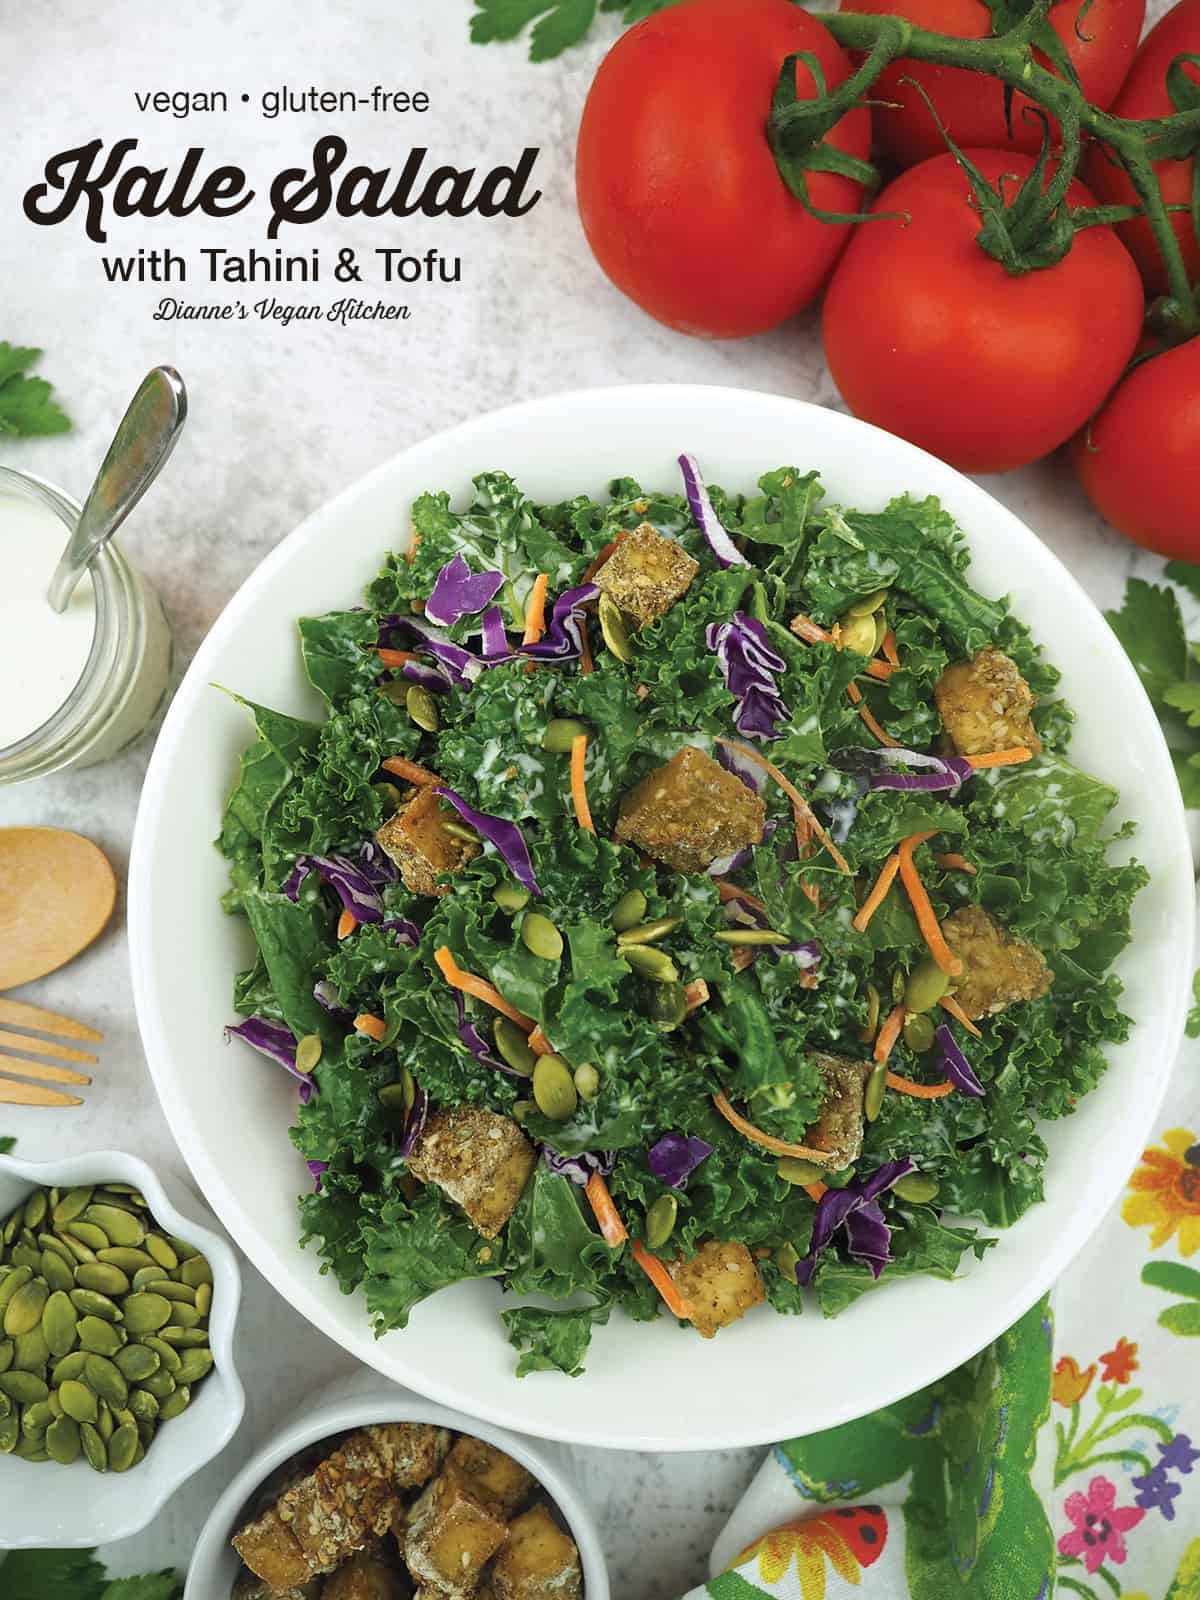 Salade de chou frisé avec tofu et tahini avec superposition de texte